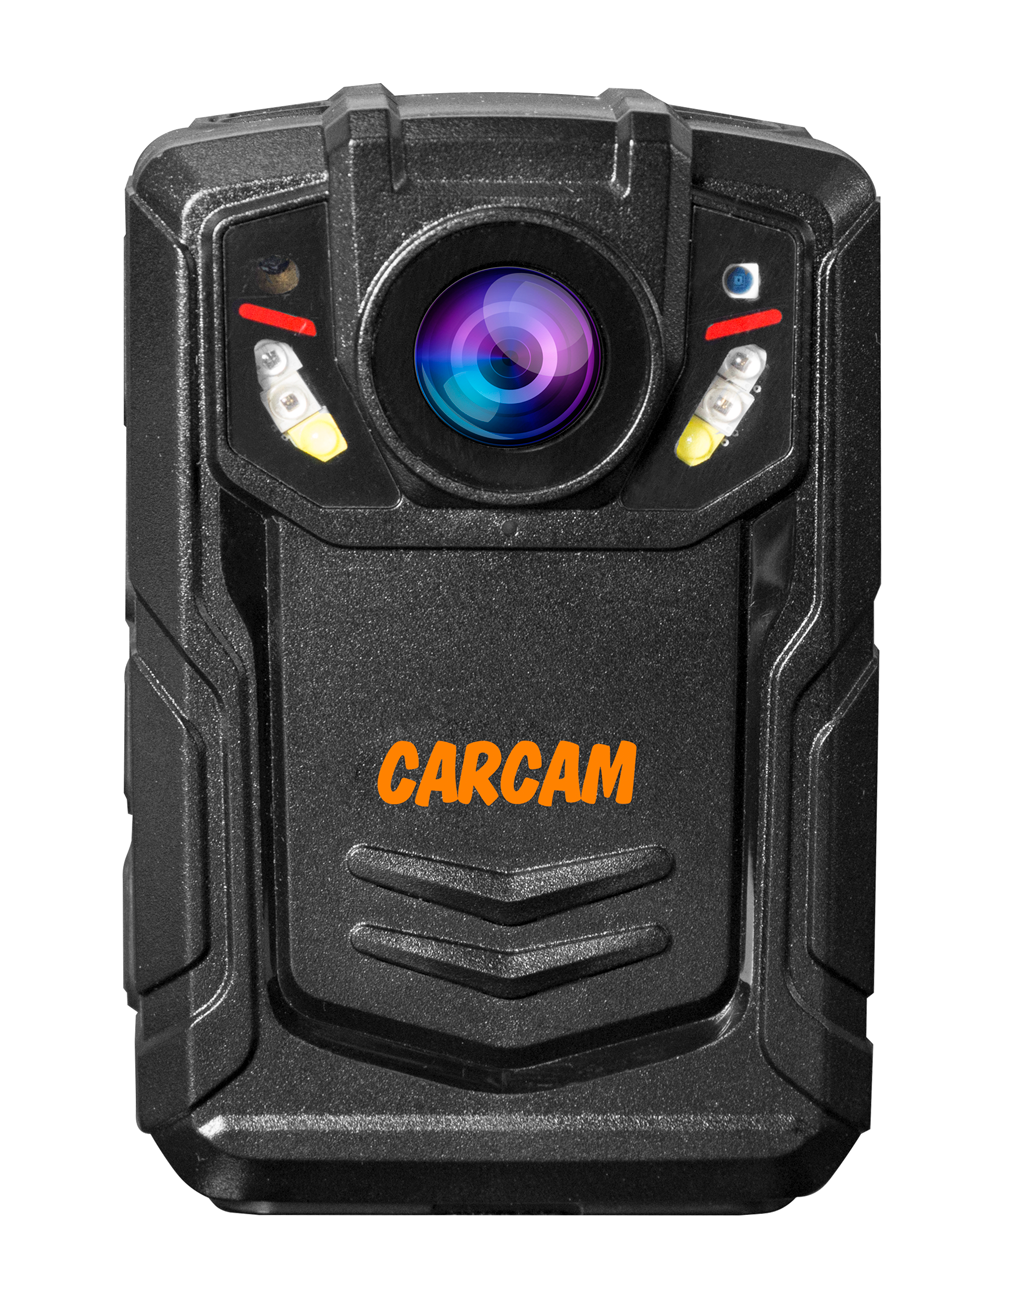 Персональный Quad HD видеорегистратор  CARCAM COMBAT 2S/4G 128GB персональный quad hd видеорегистратор carcam combat 2s 4g 128gb